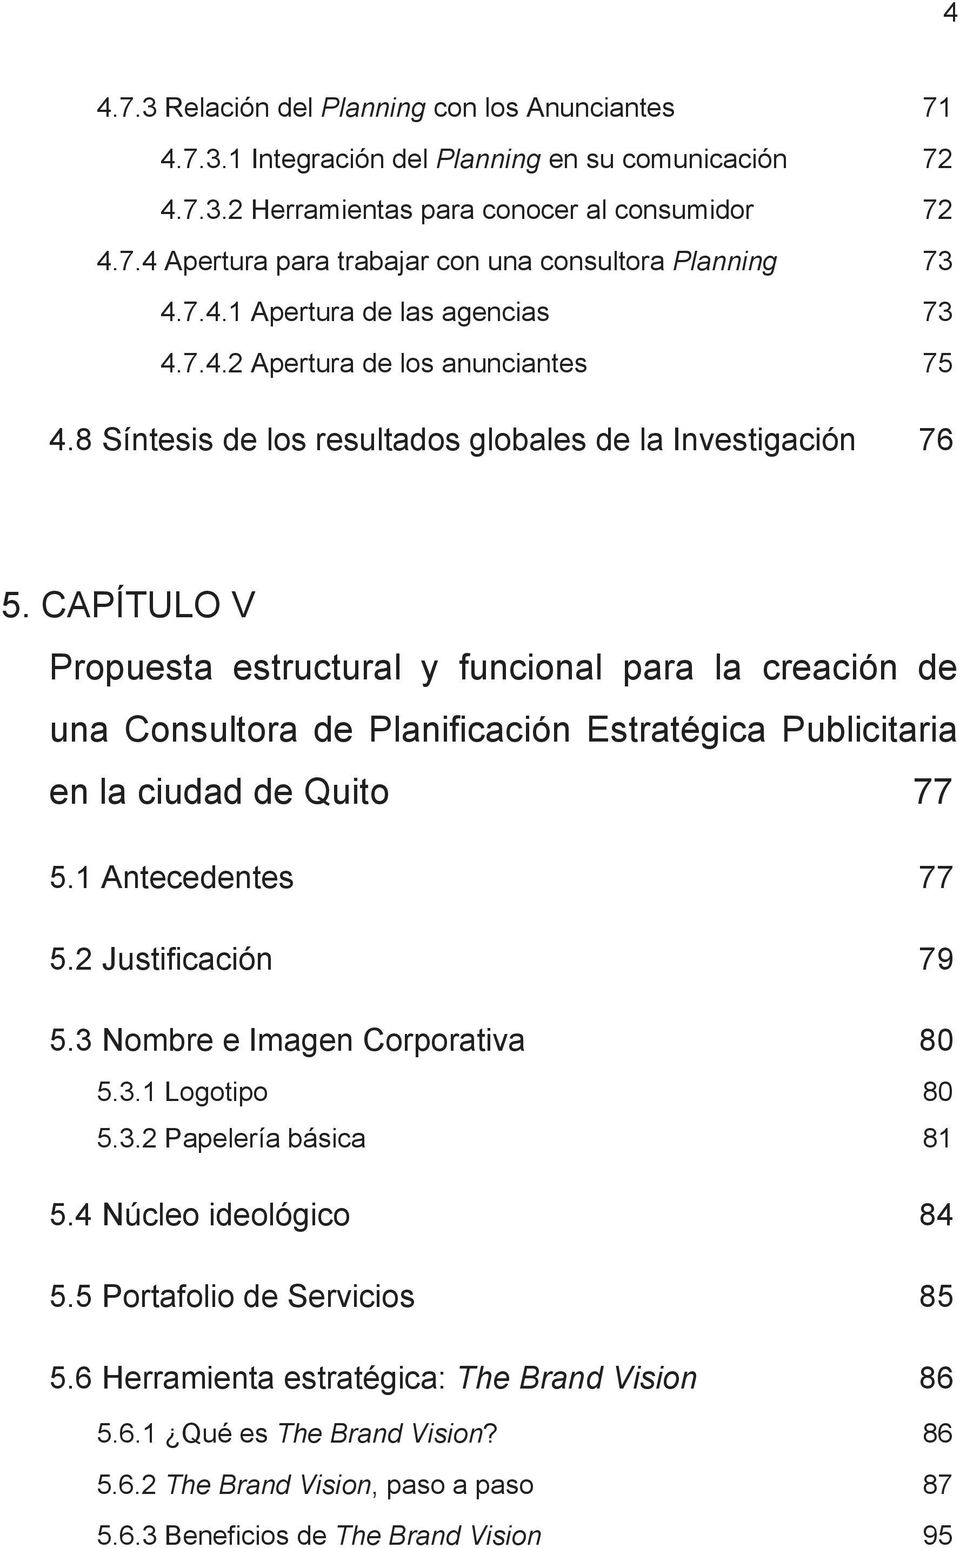 CAPÍTULO V Propuesta estructural y funcional para la creación de una Consultora de Planificación Estratégica Publicitaria en la ciudad de Quito 77 5.1 Antecedentes 77 5.2 Justificación 79 5.